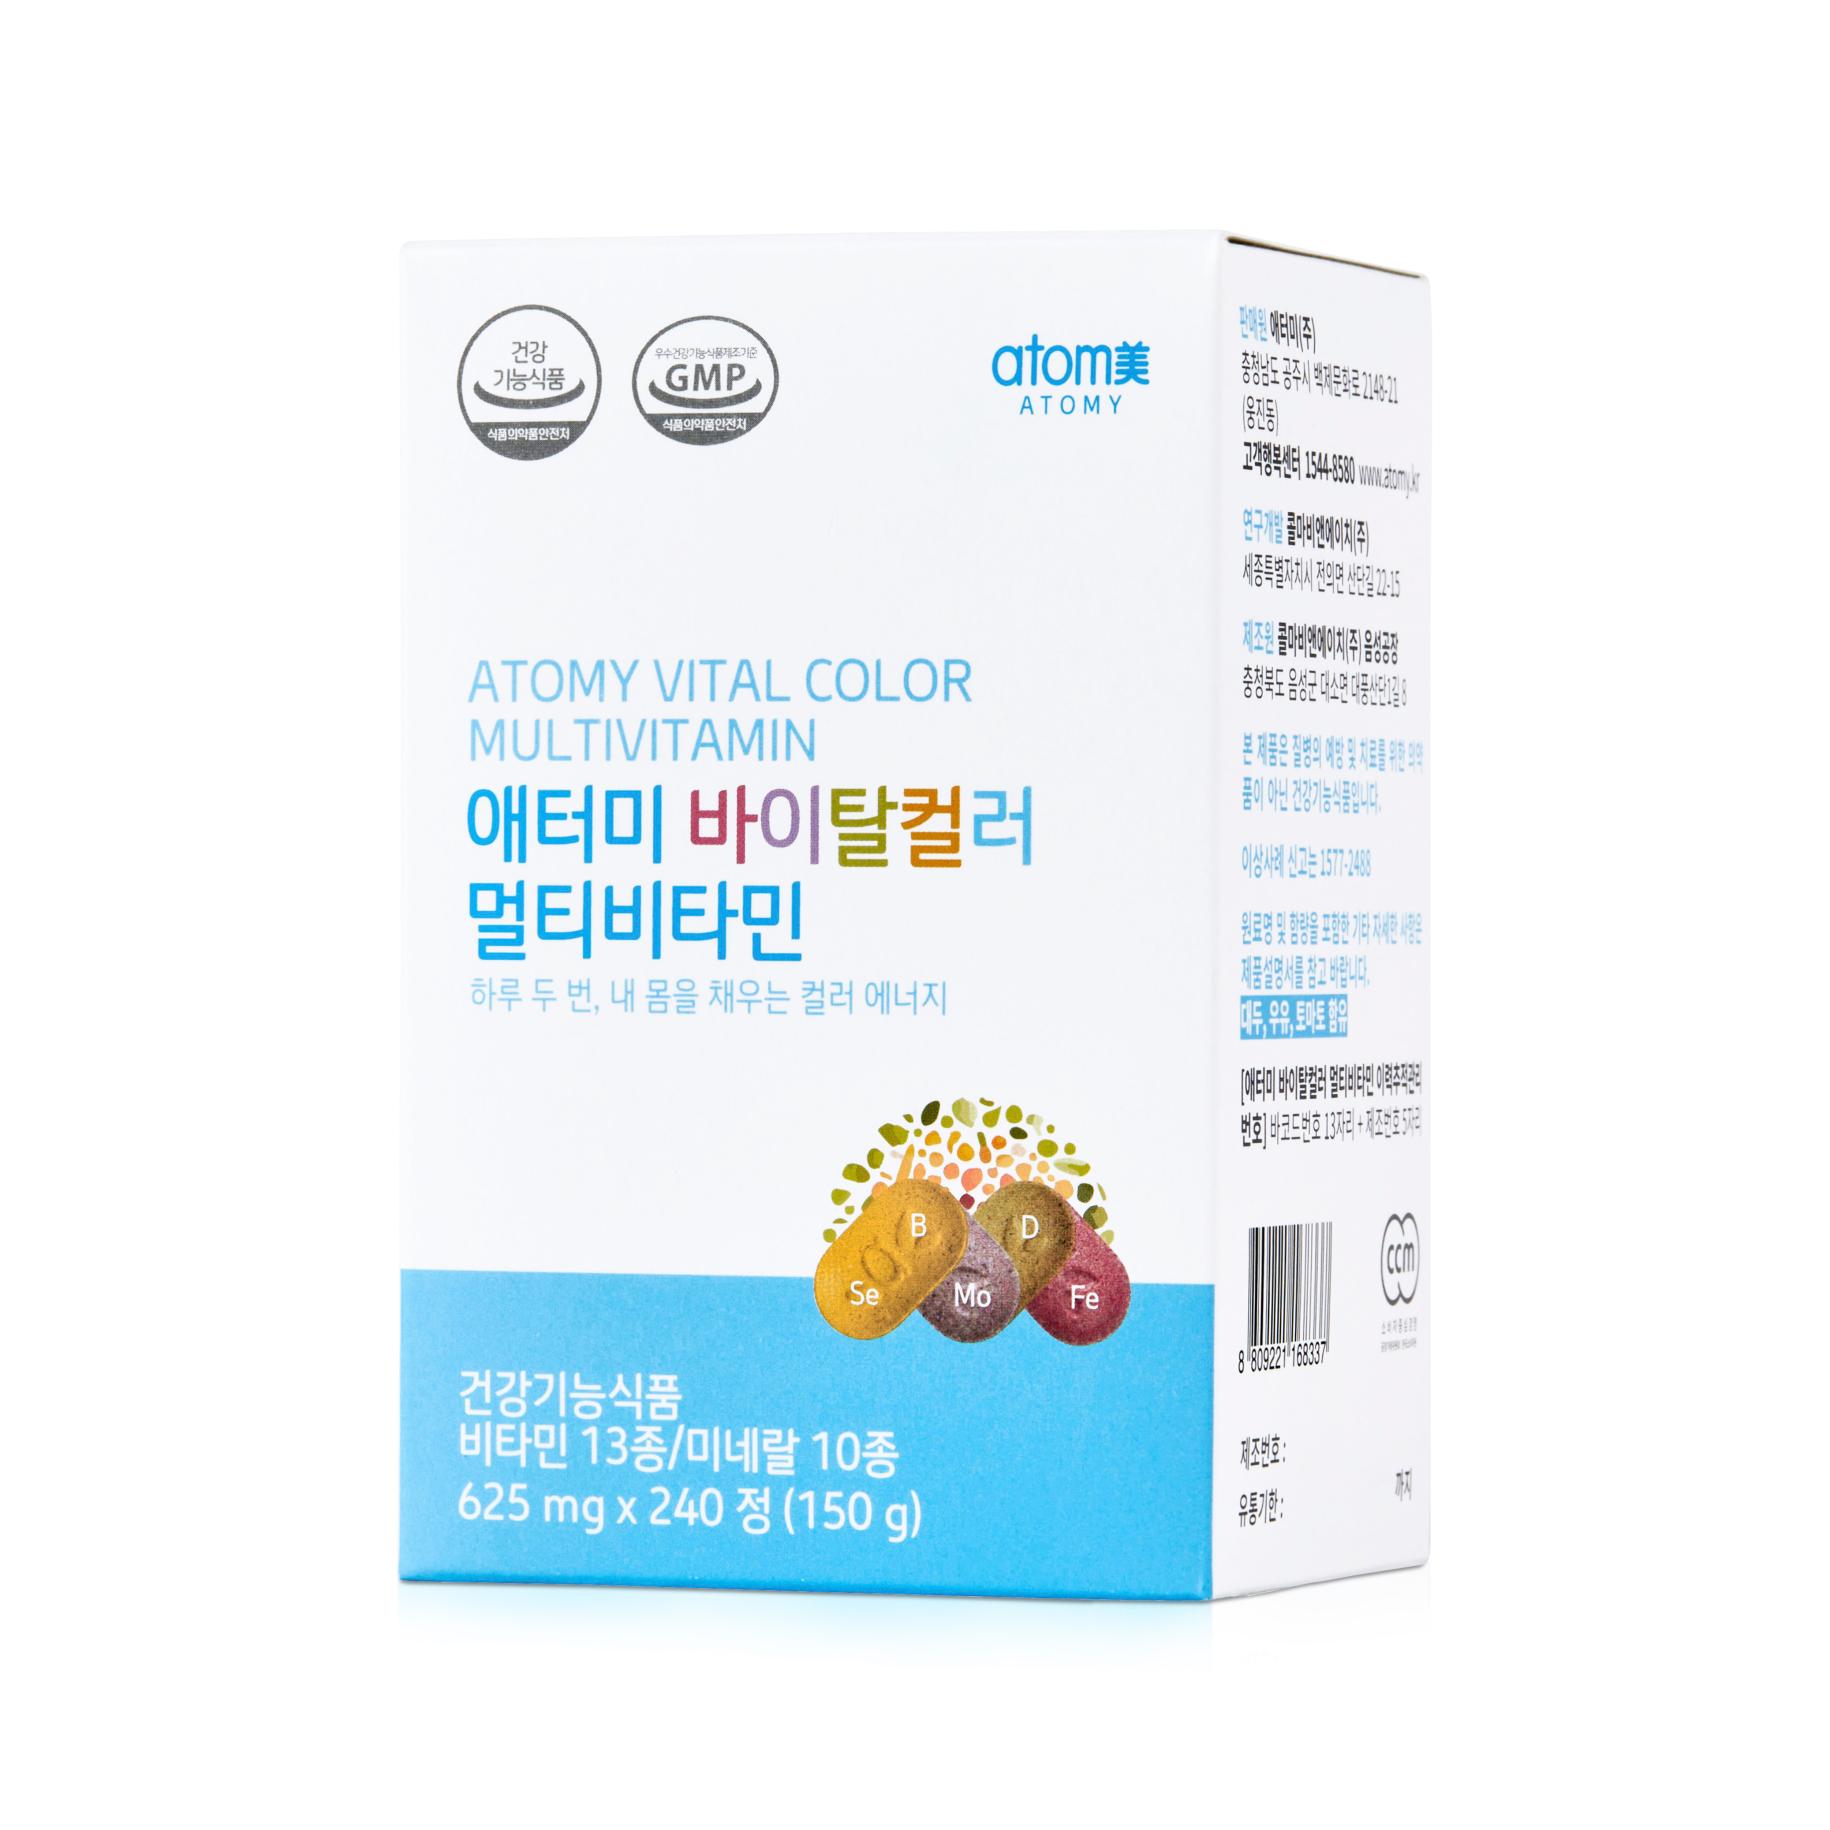 vitamin-tong-hop-atomy-vital-color-multivitamin-han-quoc-hop-625mg-x-240-vien